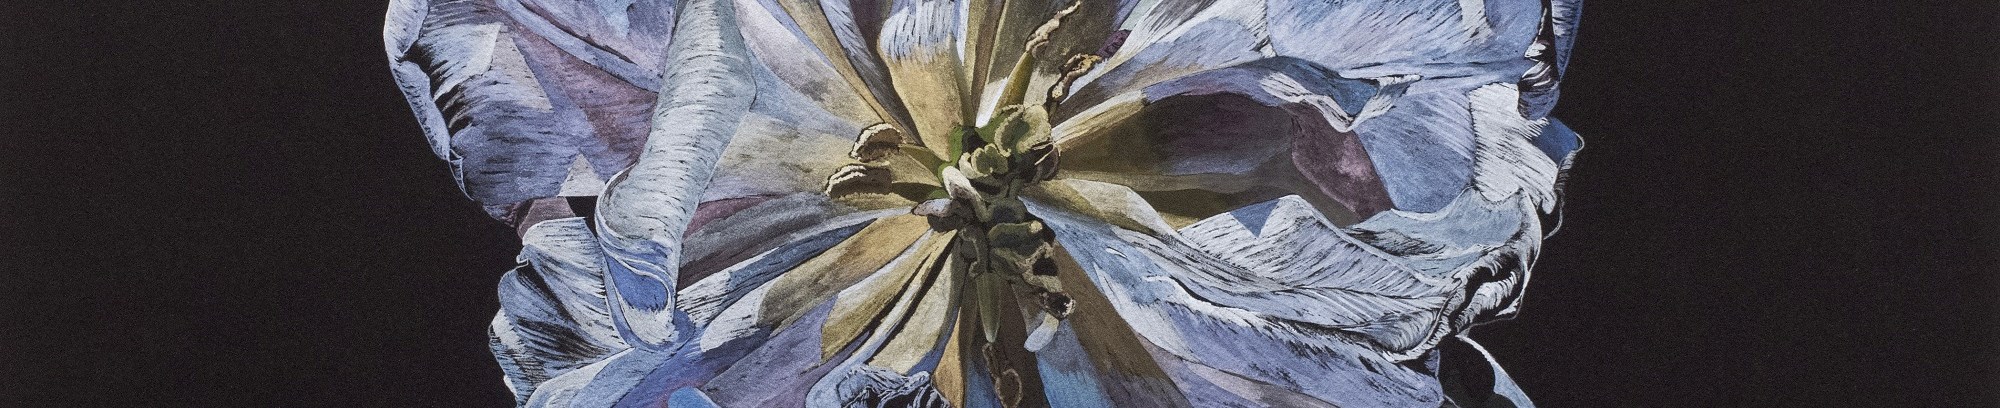 tulipan - blomsten i kunsten - fra underviser Anne Skole Overgaard